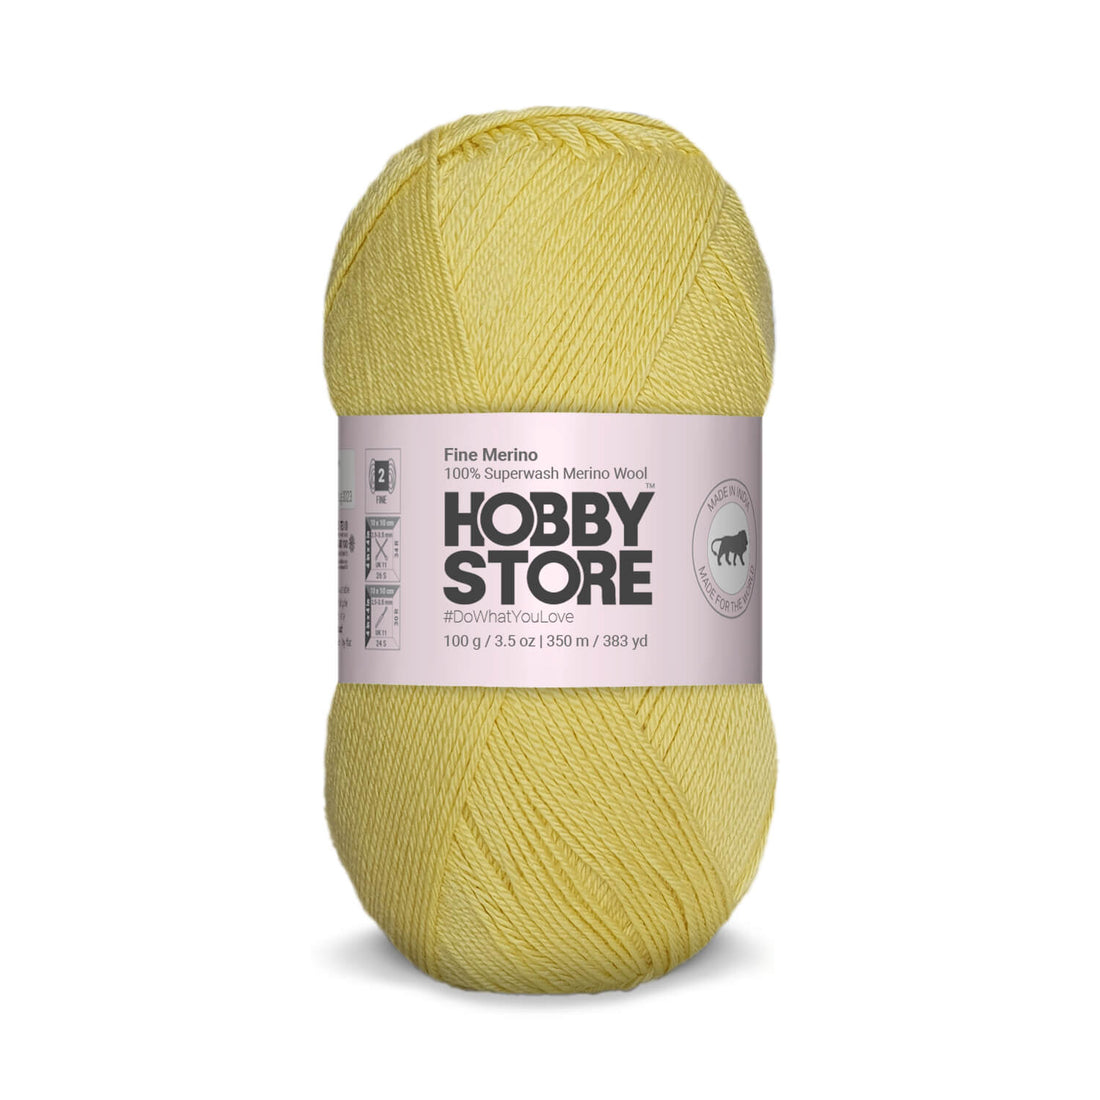 Fine Merino Wool by Hobby Store - Baby Yellow FM029